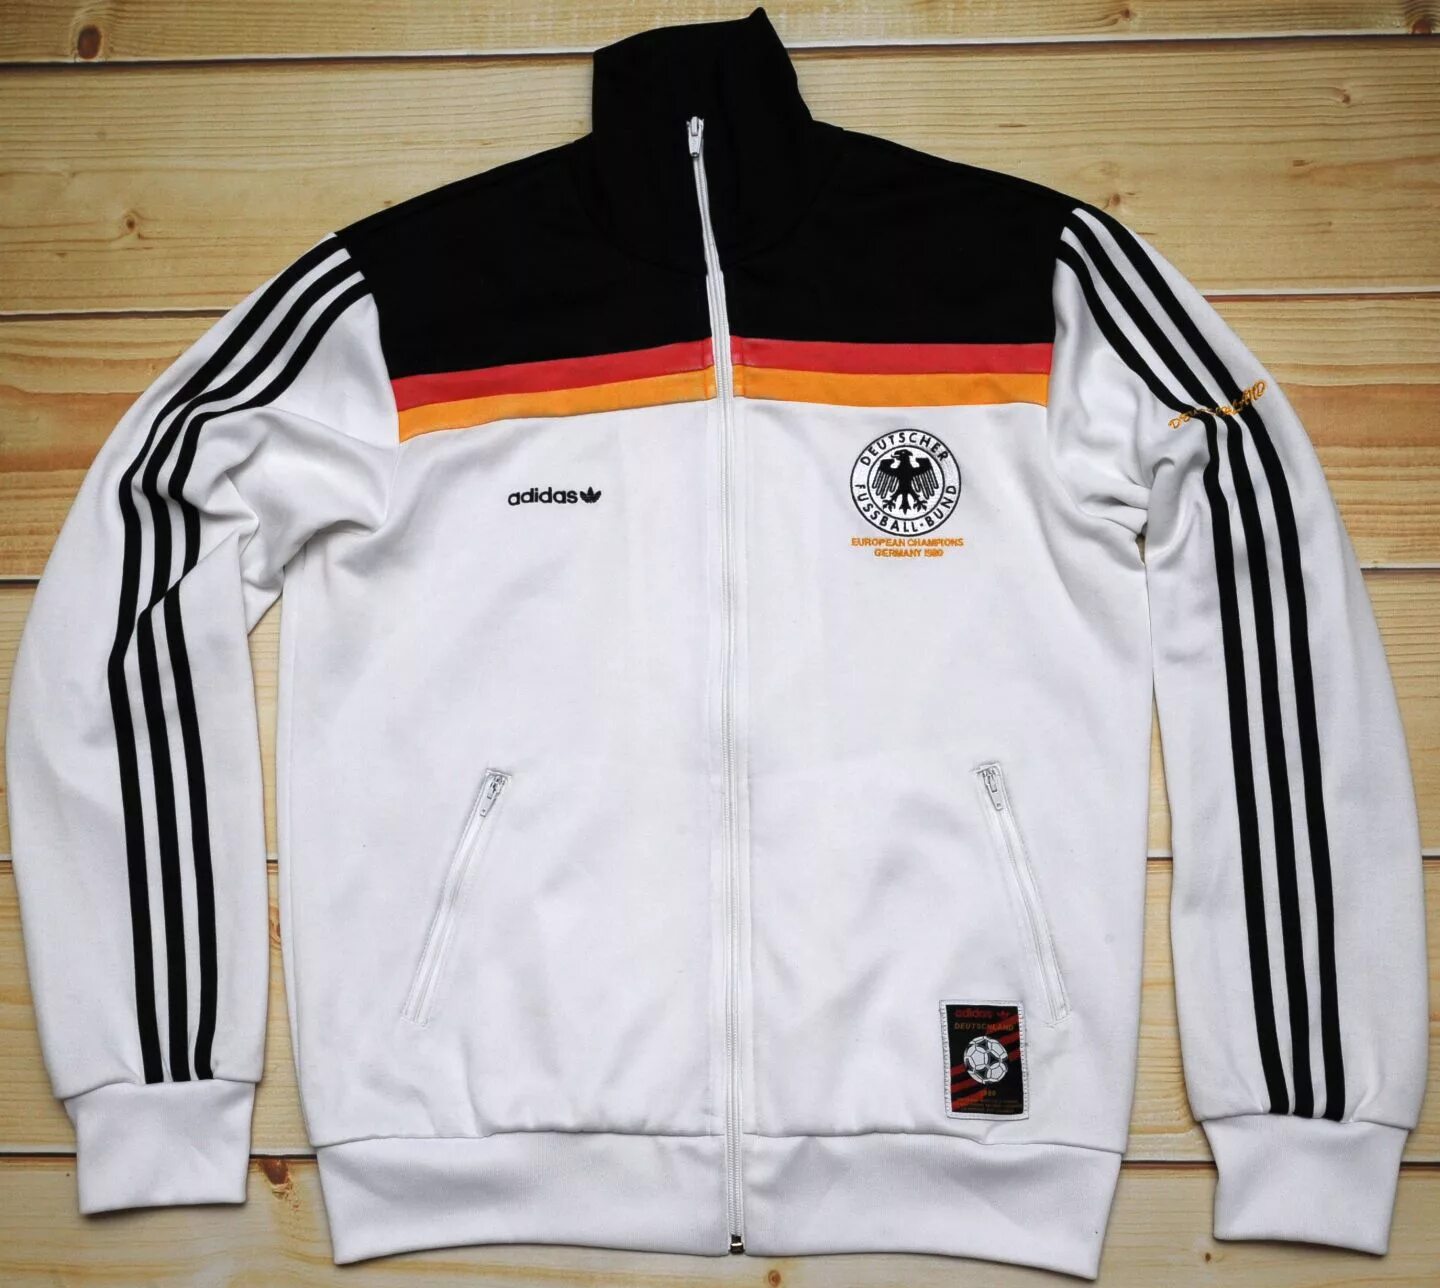 Старые спортивные костюмы. Олимпийка адидас deutscher Fussball Bund. Adidas DFB 1980 олимпийка. Олимпийка adidas Euro 2006 Germany. Олимпийка адидас Germany.